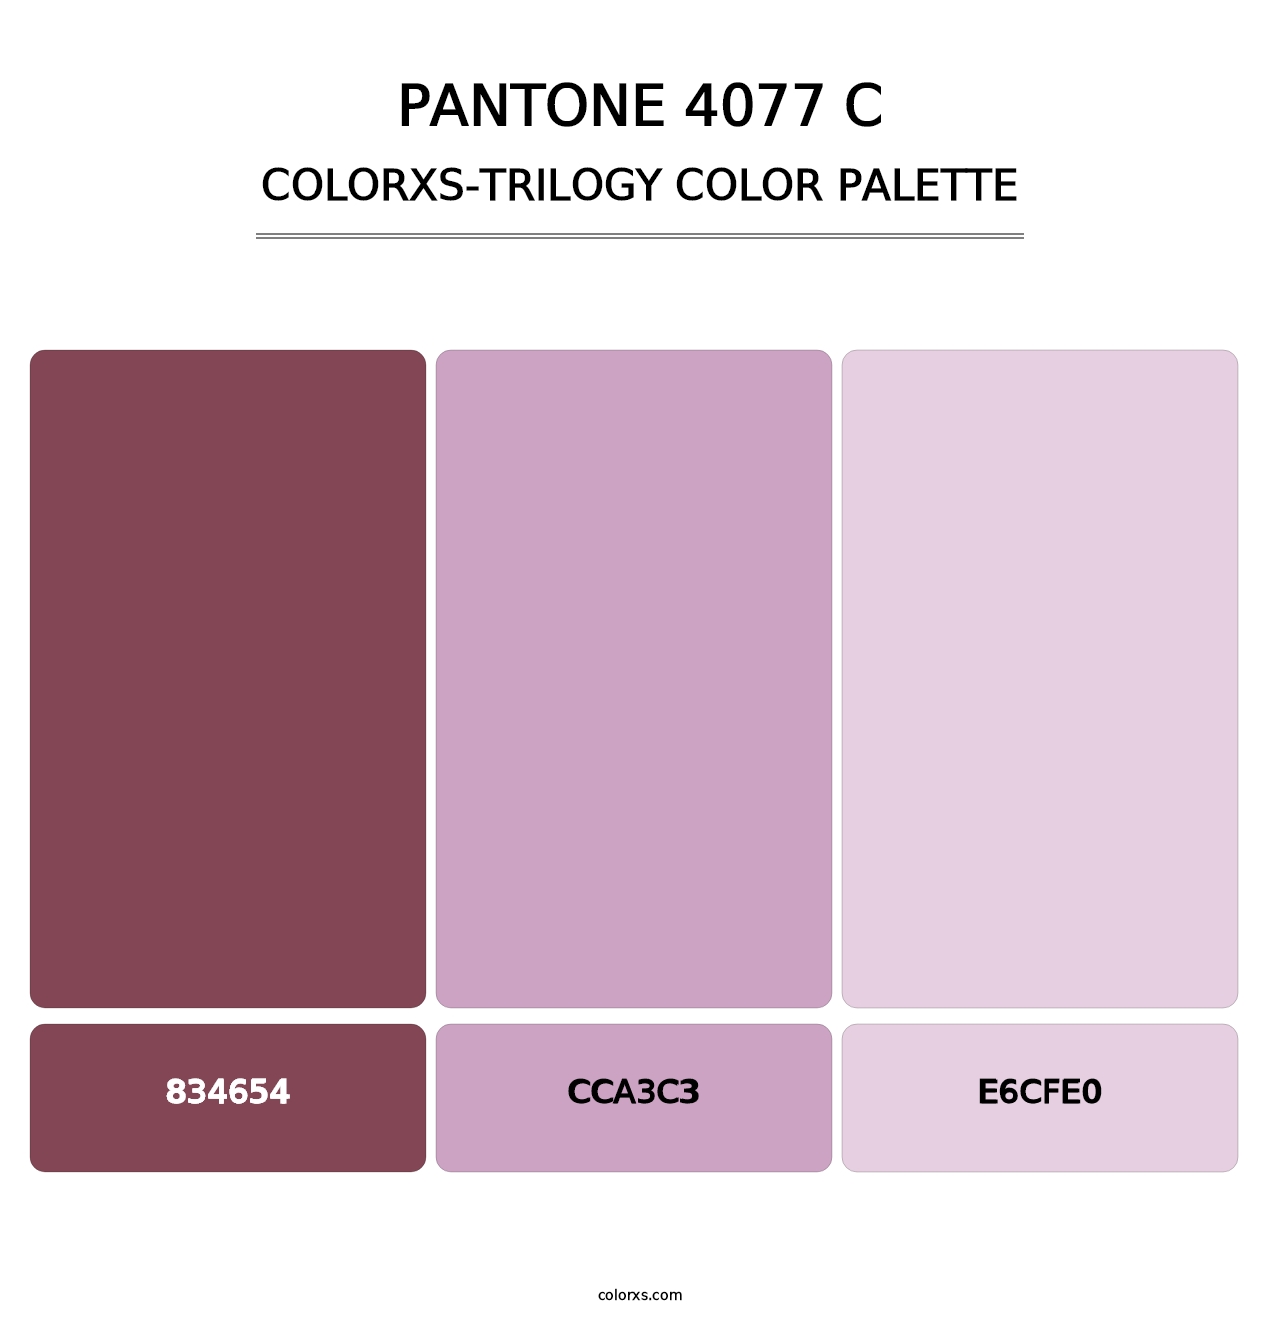 PANTONE 4077 C - Colorxs Trilogy Palette